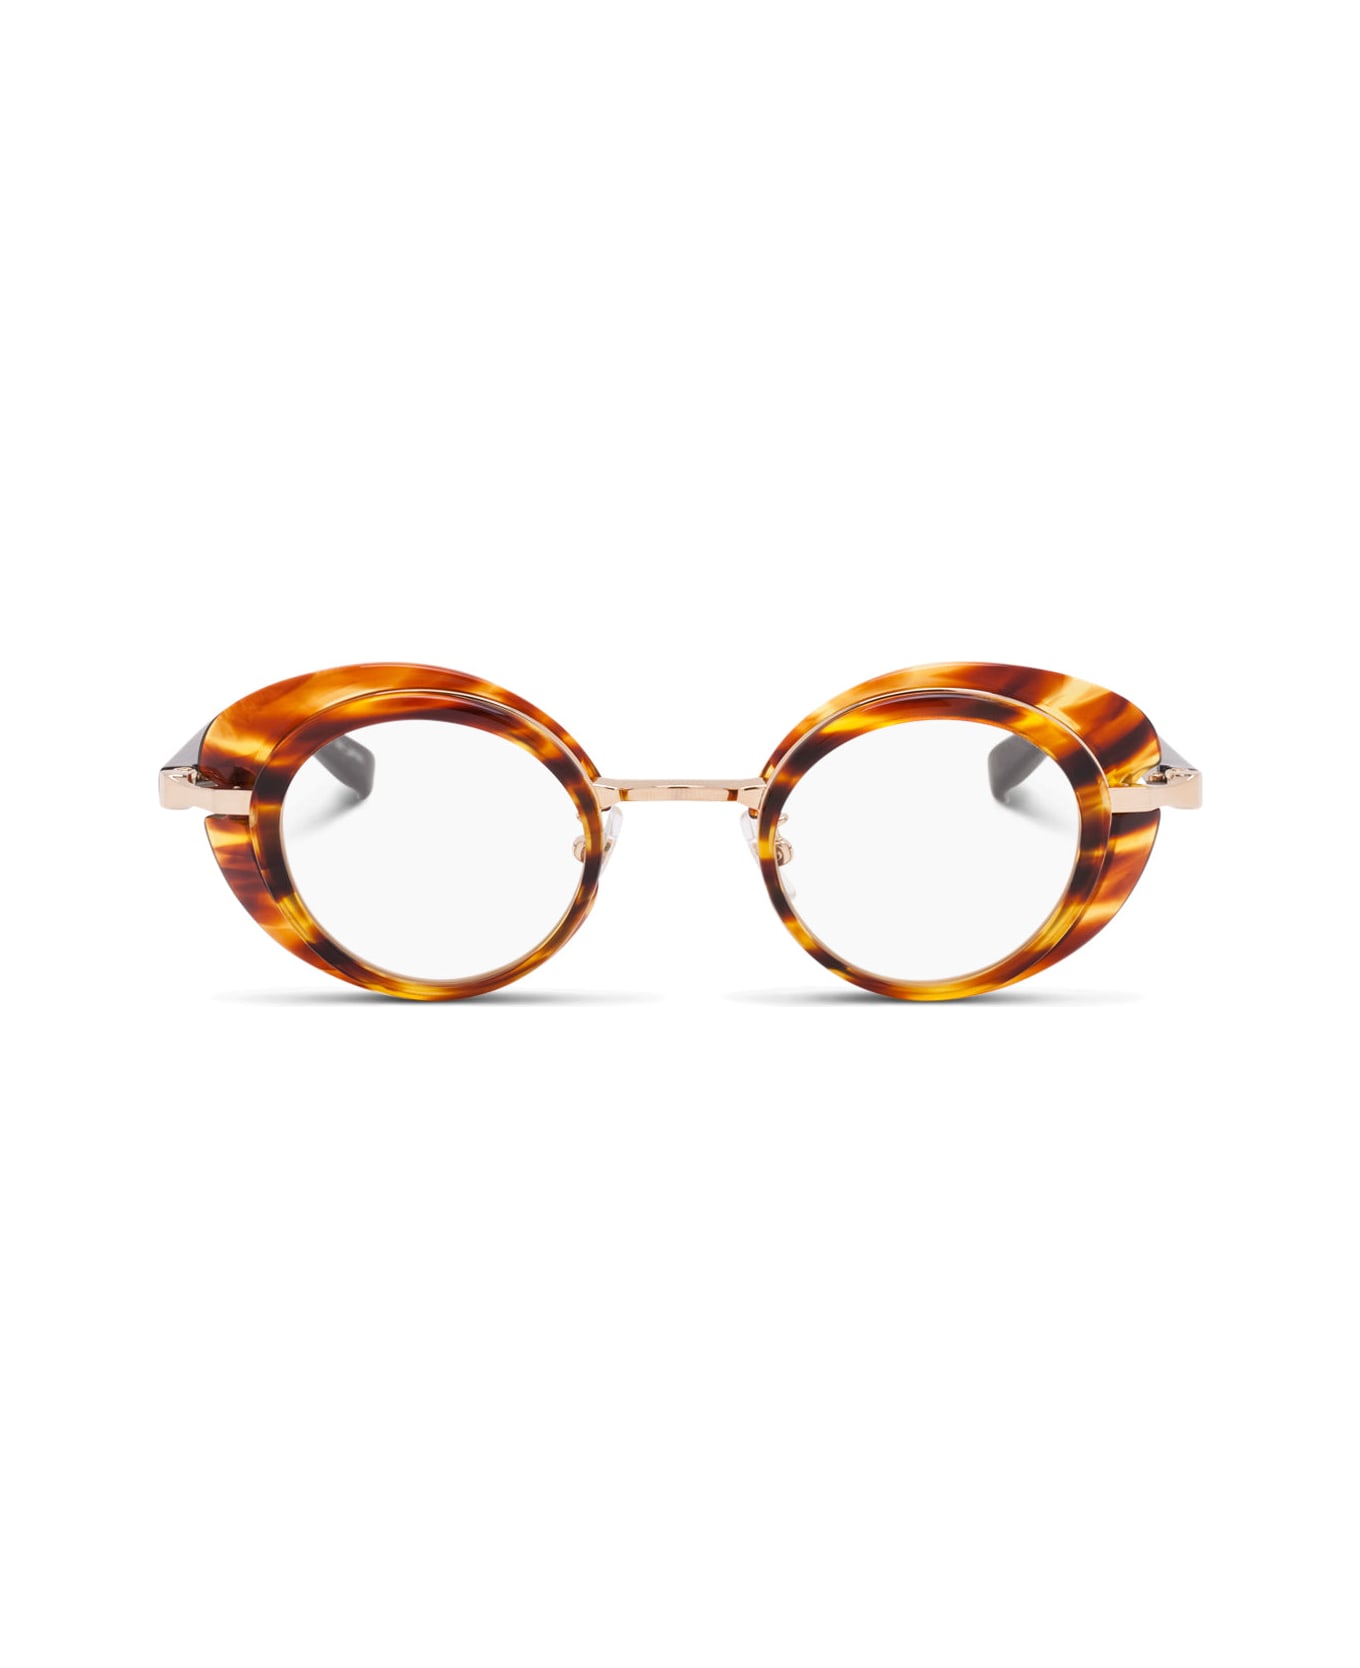 FACTORY900 Rf 052-177 Glasses - havana/black/gold アイウェア